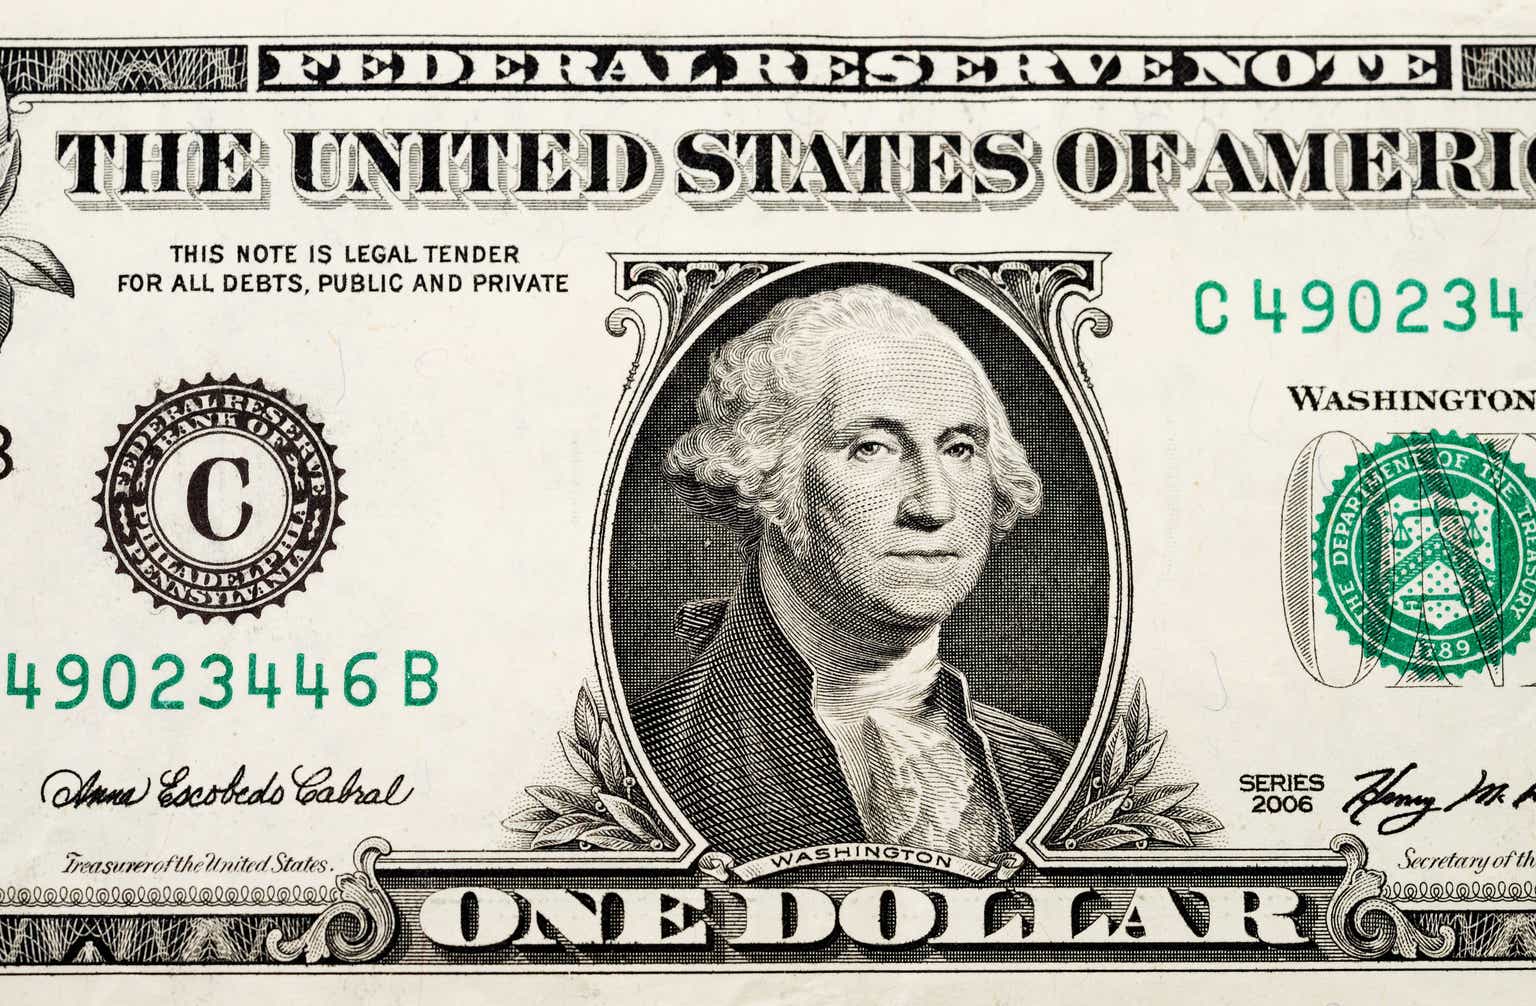 1 вопрос 1 доллар. Купюра 1 доллар. Американский доллар. Вашингтон на купюре доллара. Вашингтон на долларовой купюре.